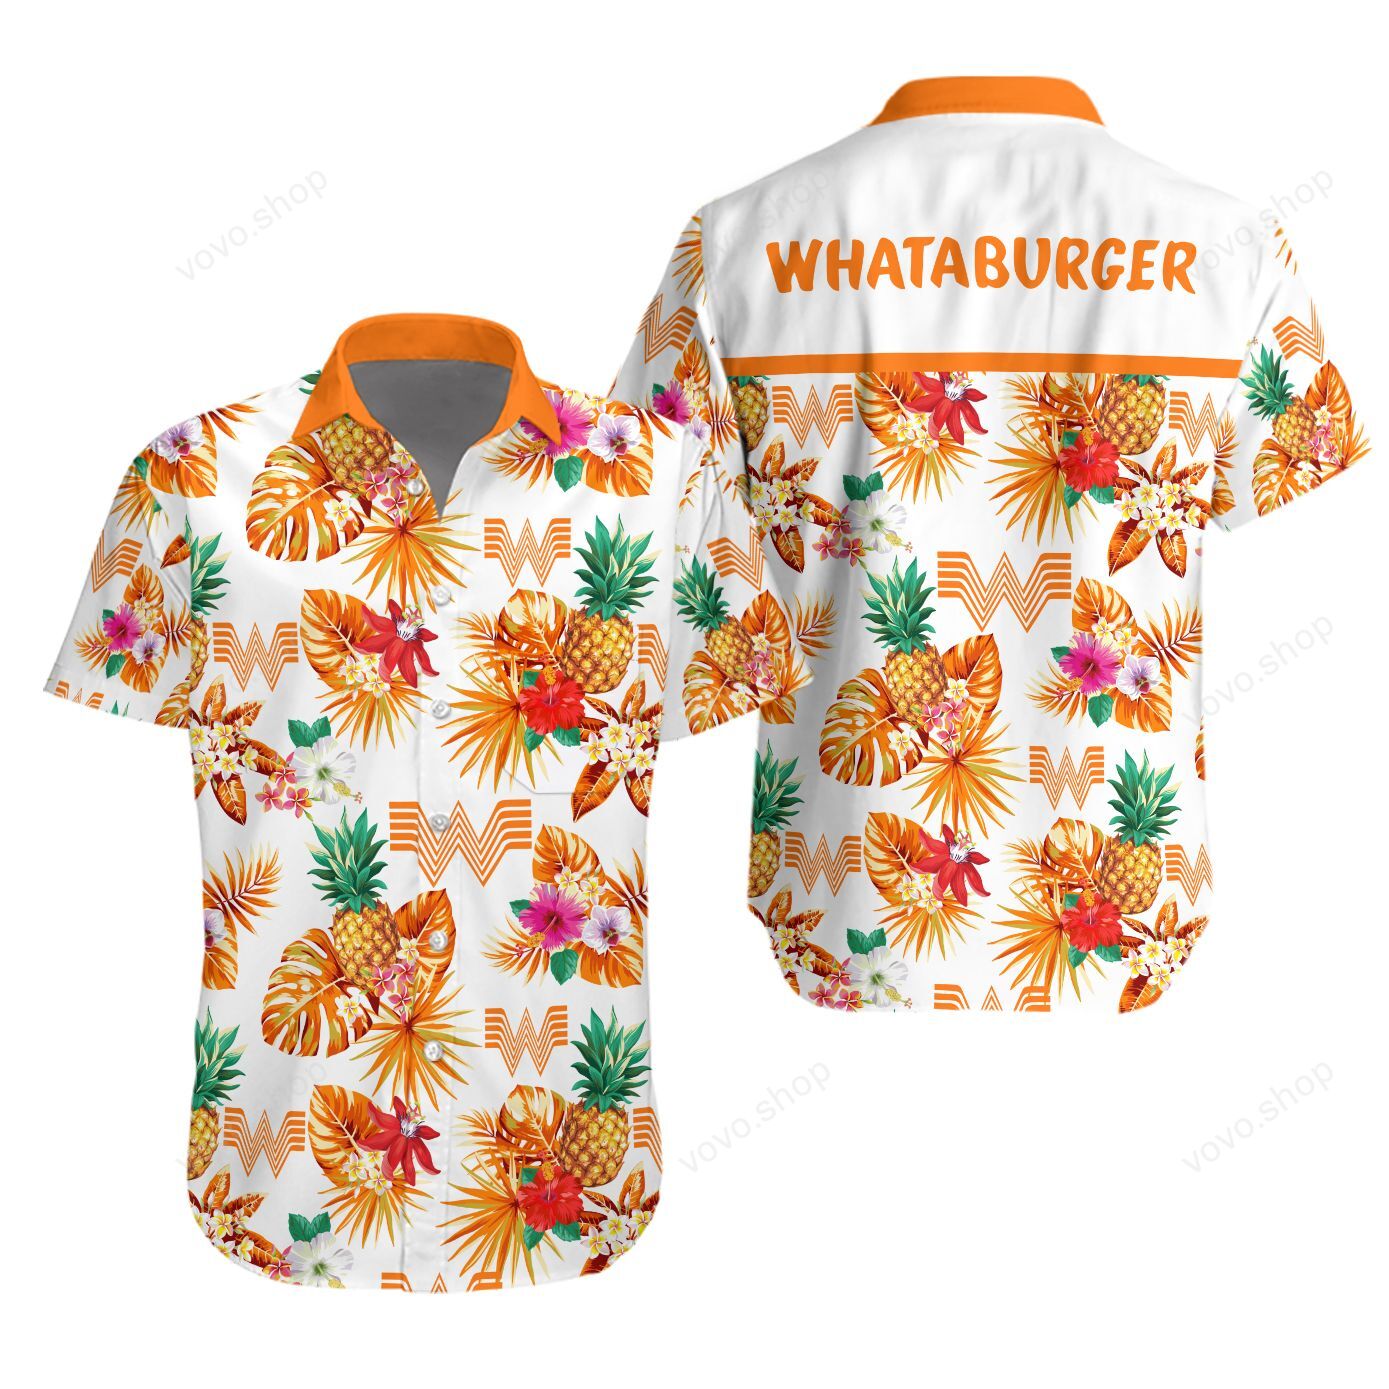 Hawaiian Whataburger shirt and short